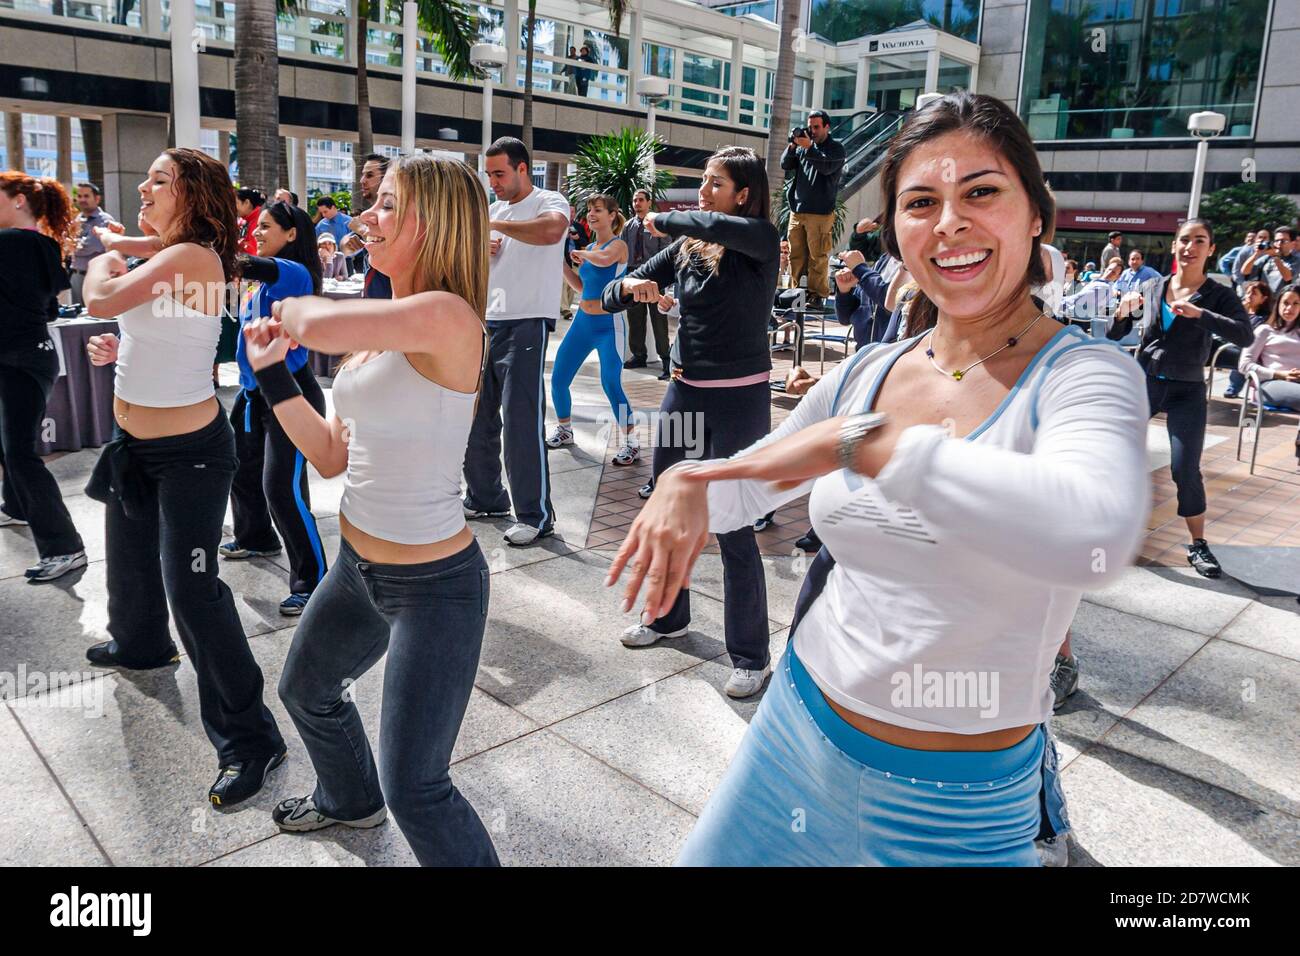 Miami Florida, Mayor's Health & Fitness Challenge, Zumba salsa sesión de aeróbic sesión de entrenamiento, mujer hispana mujeres, Foto de stock